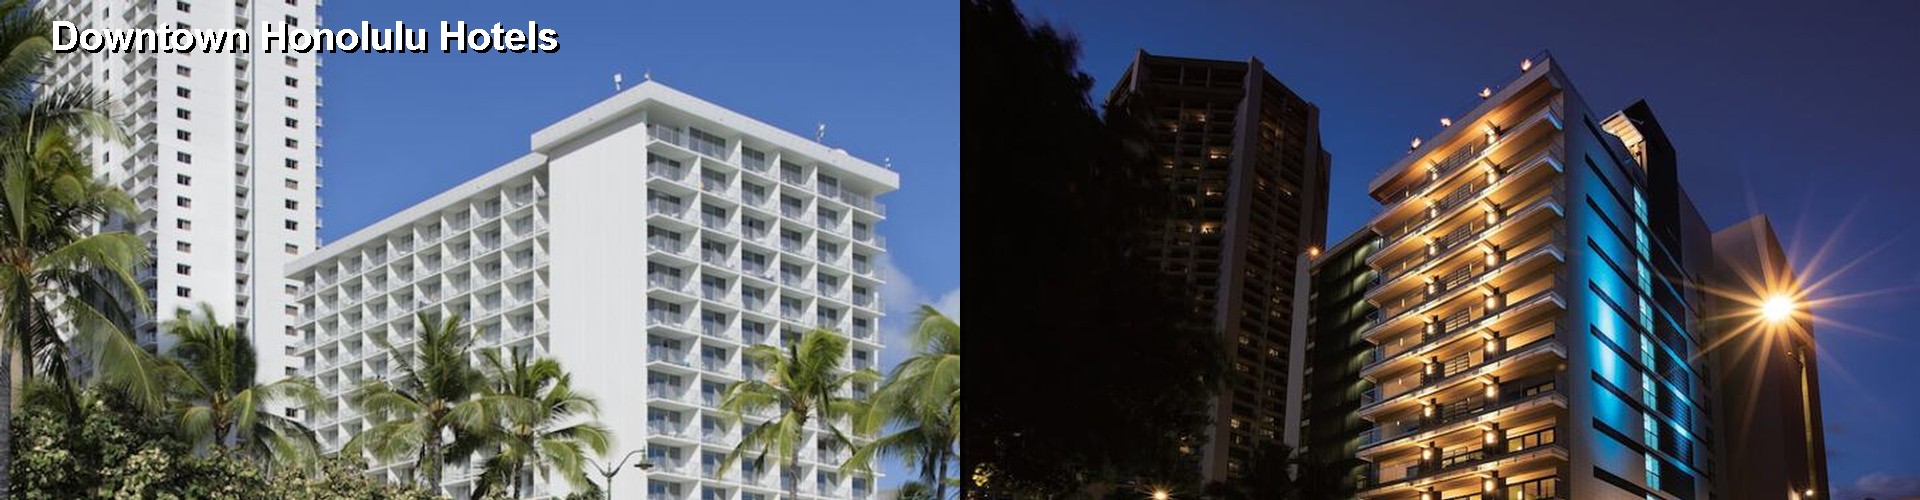 4 Best Hotels near Downtown Honolulu